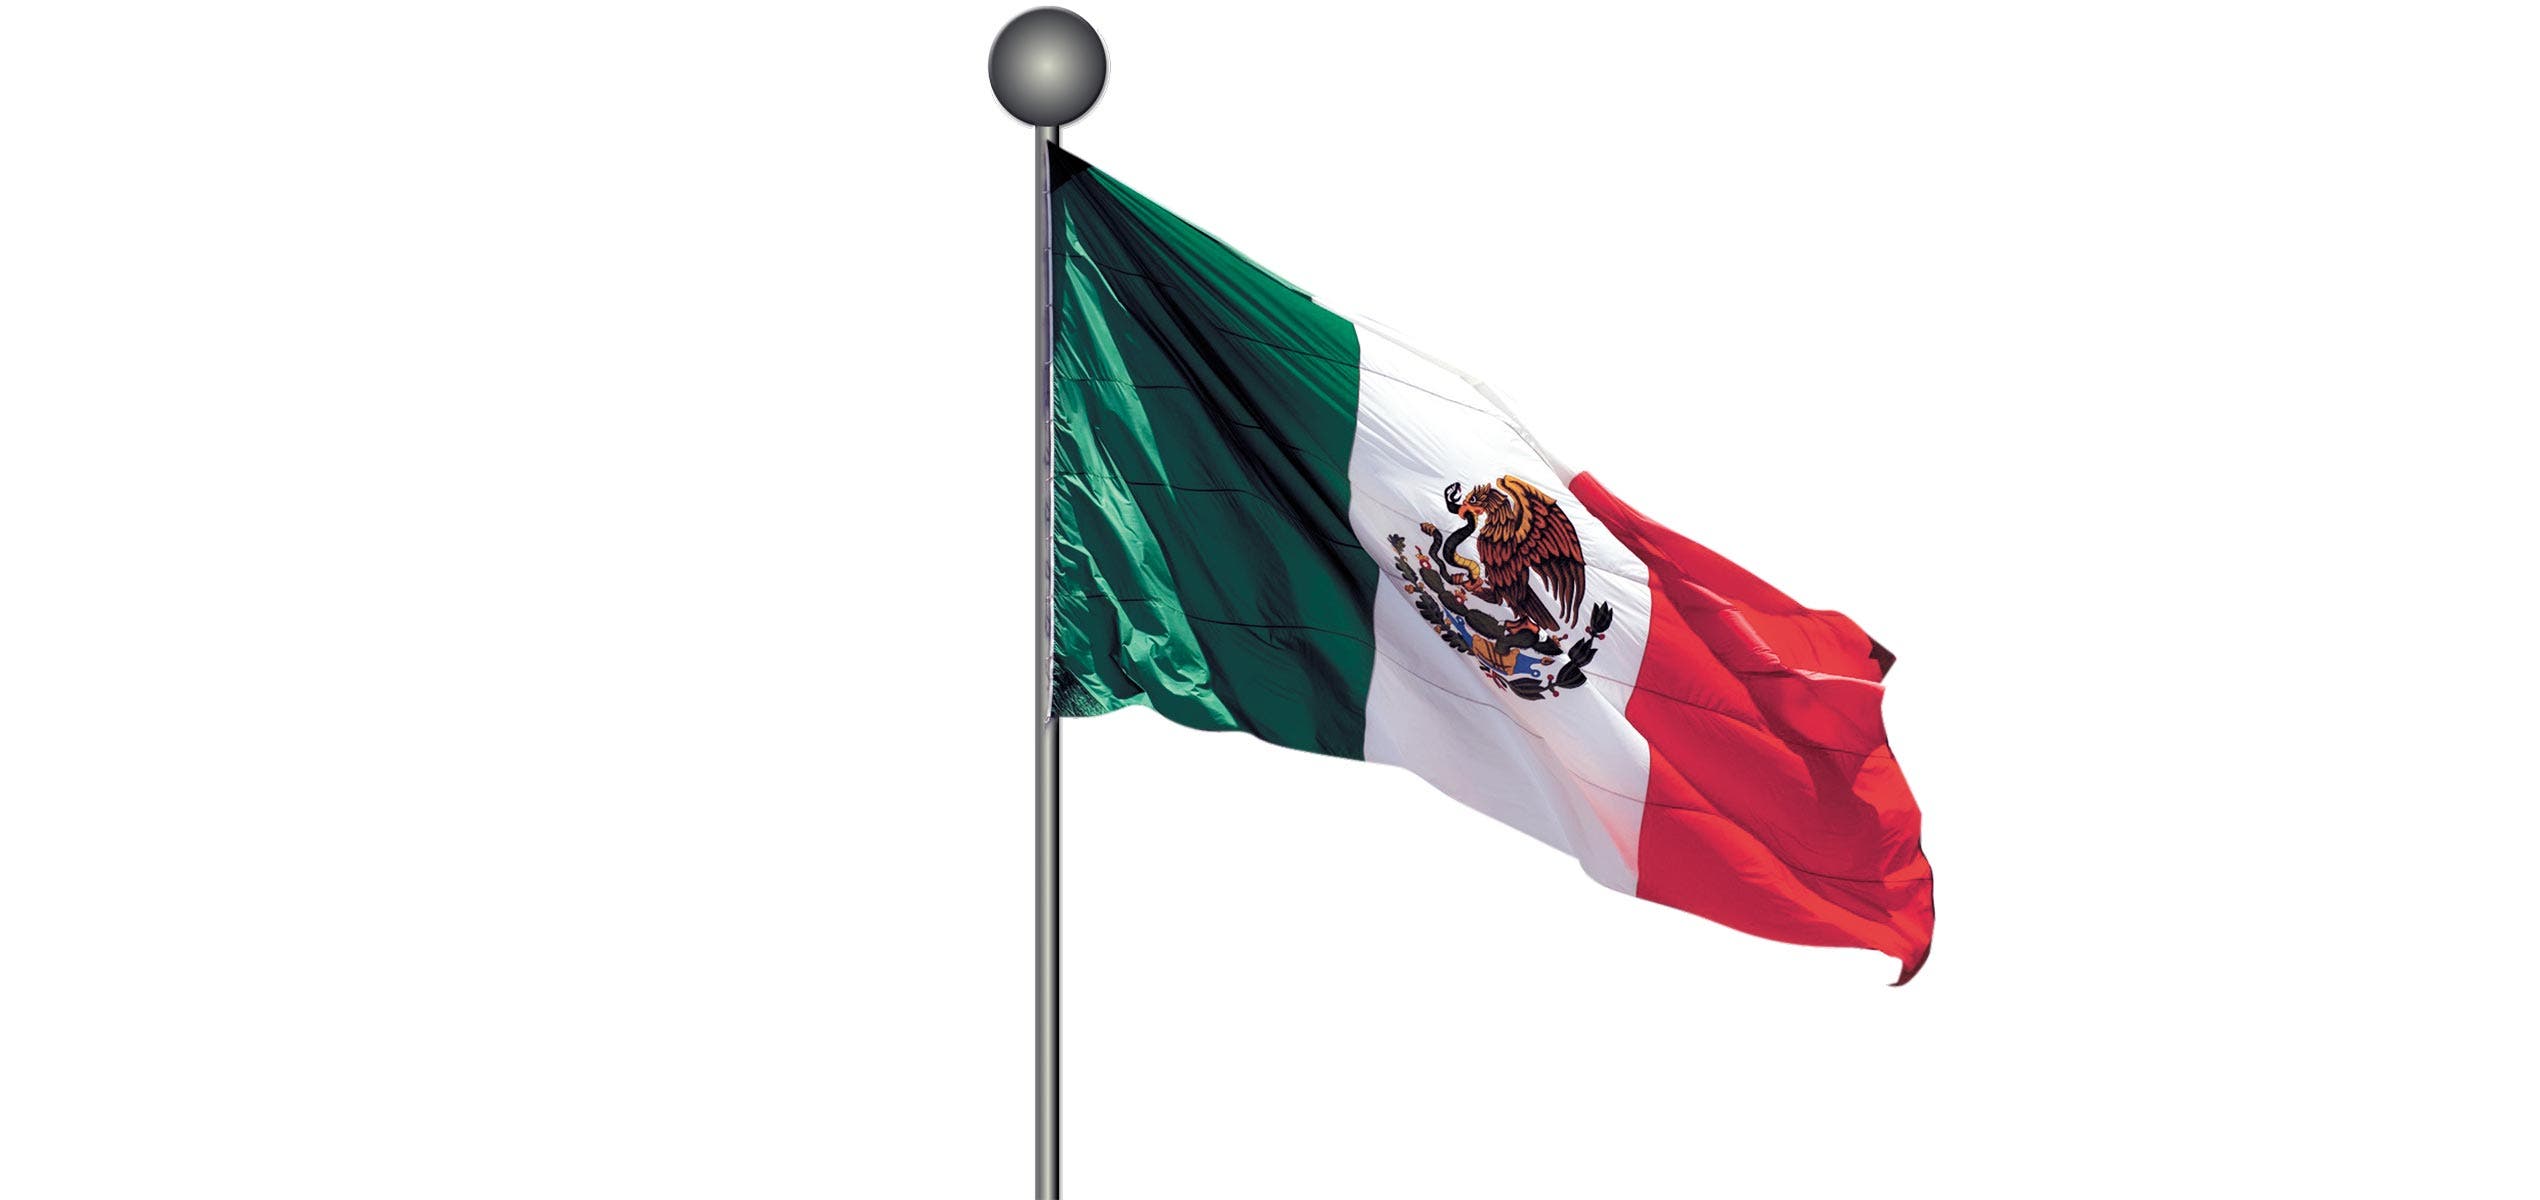 Desde 1934, verde, blanco y rojo identifican a los mexicanos